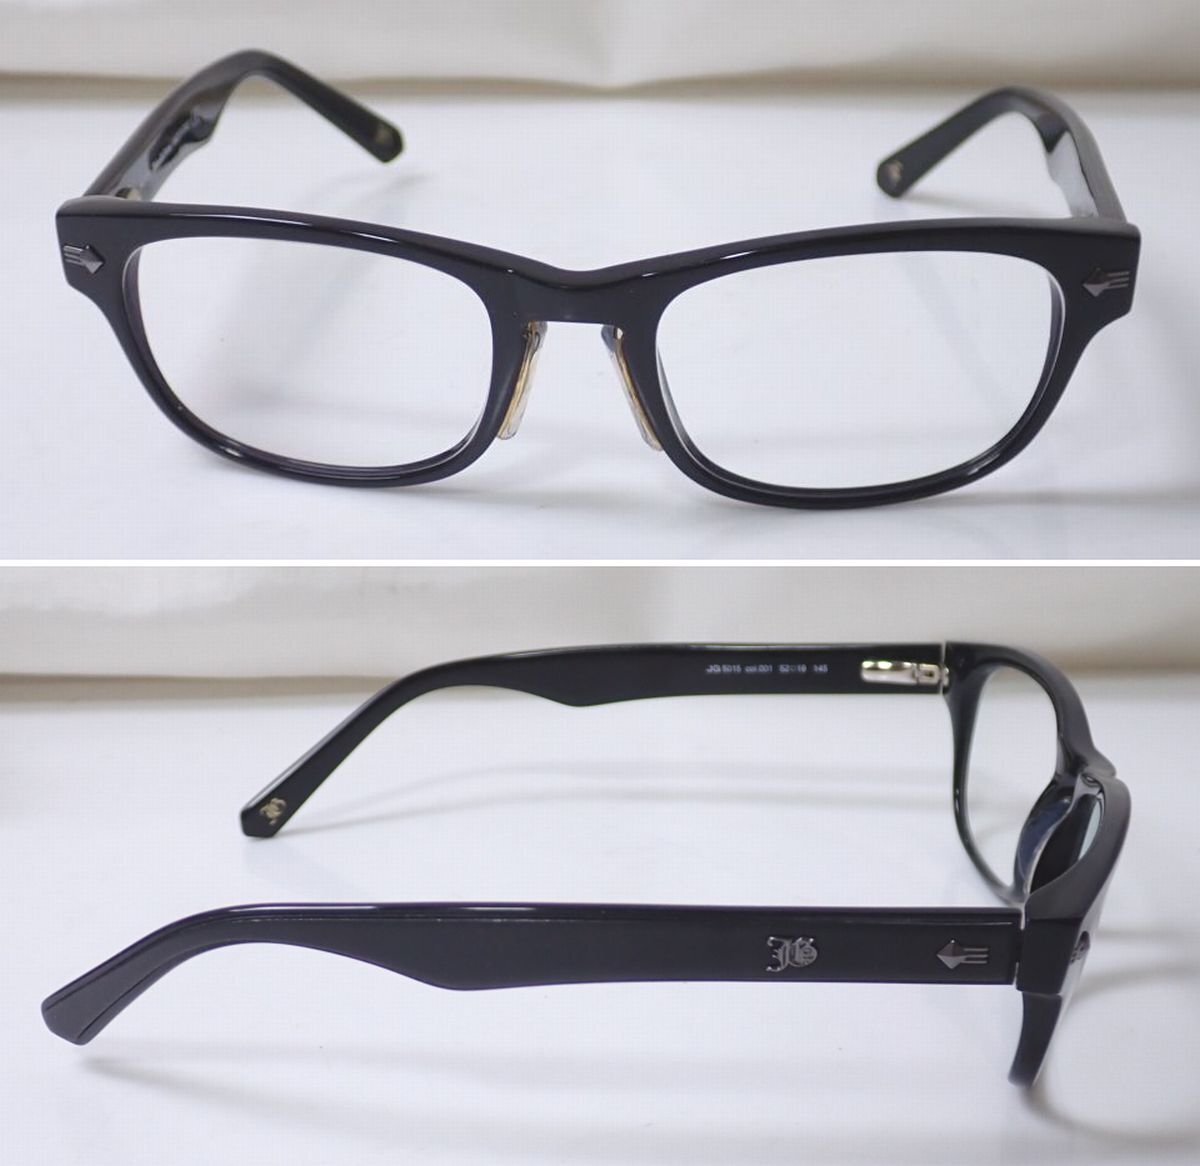 *John Galliano/ John Galliano glasses / glasses frame JG5015/ clear / black / full rim / plastic frame / case attaching &1886700056